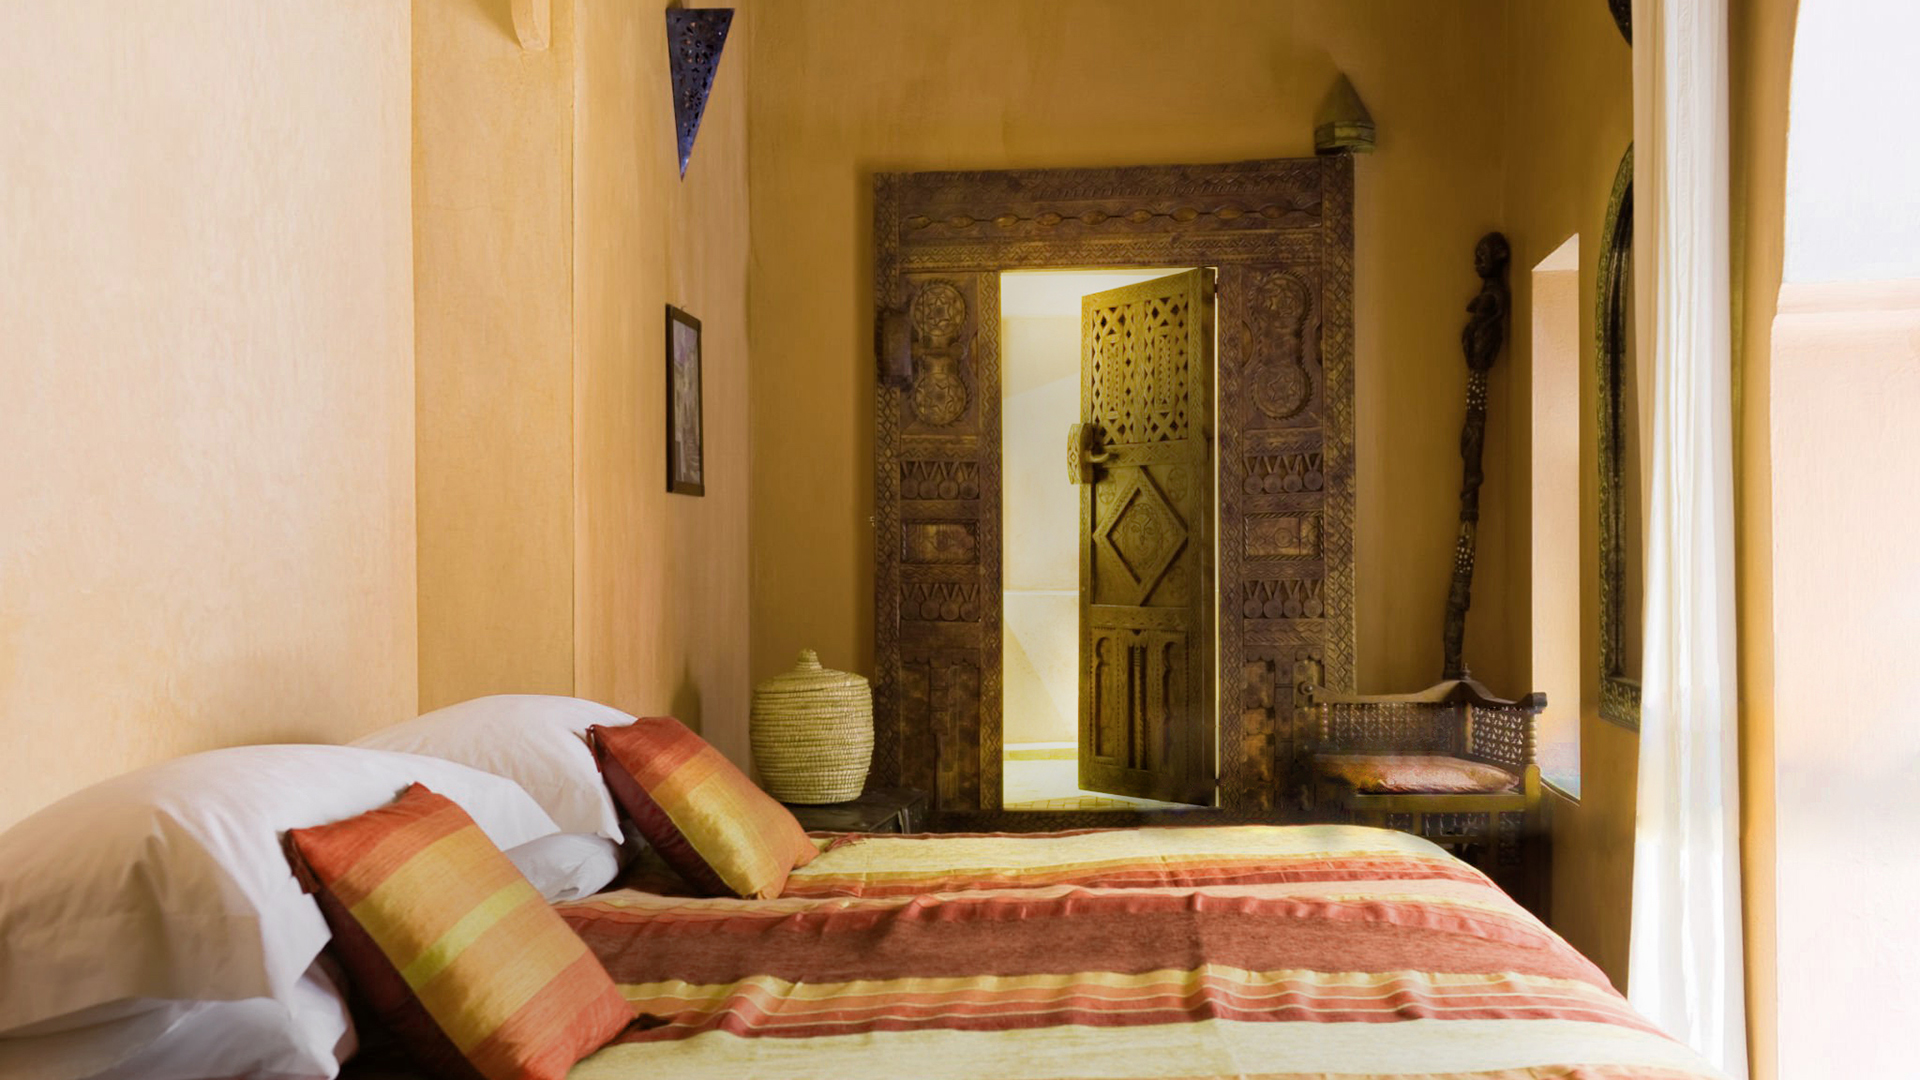 Arabialainen tyylinen makuuhuone, jossa on tadelakt-seinät